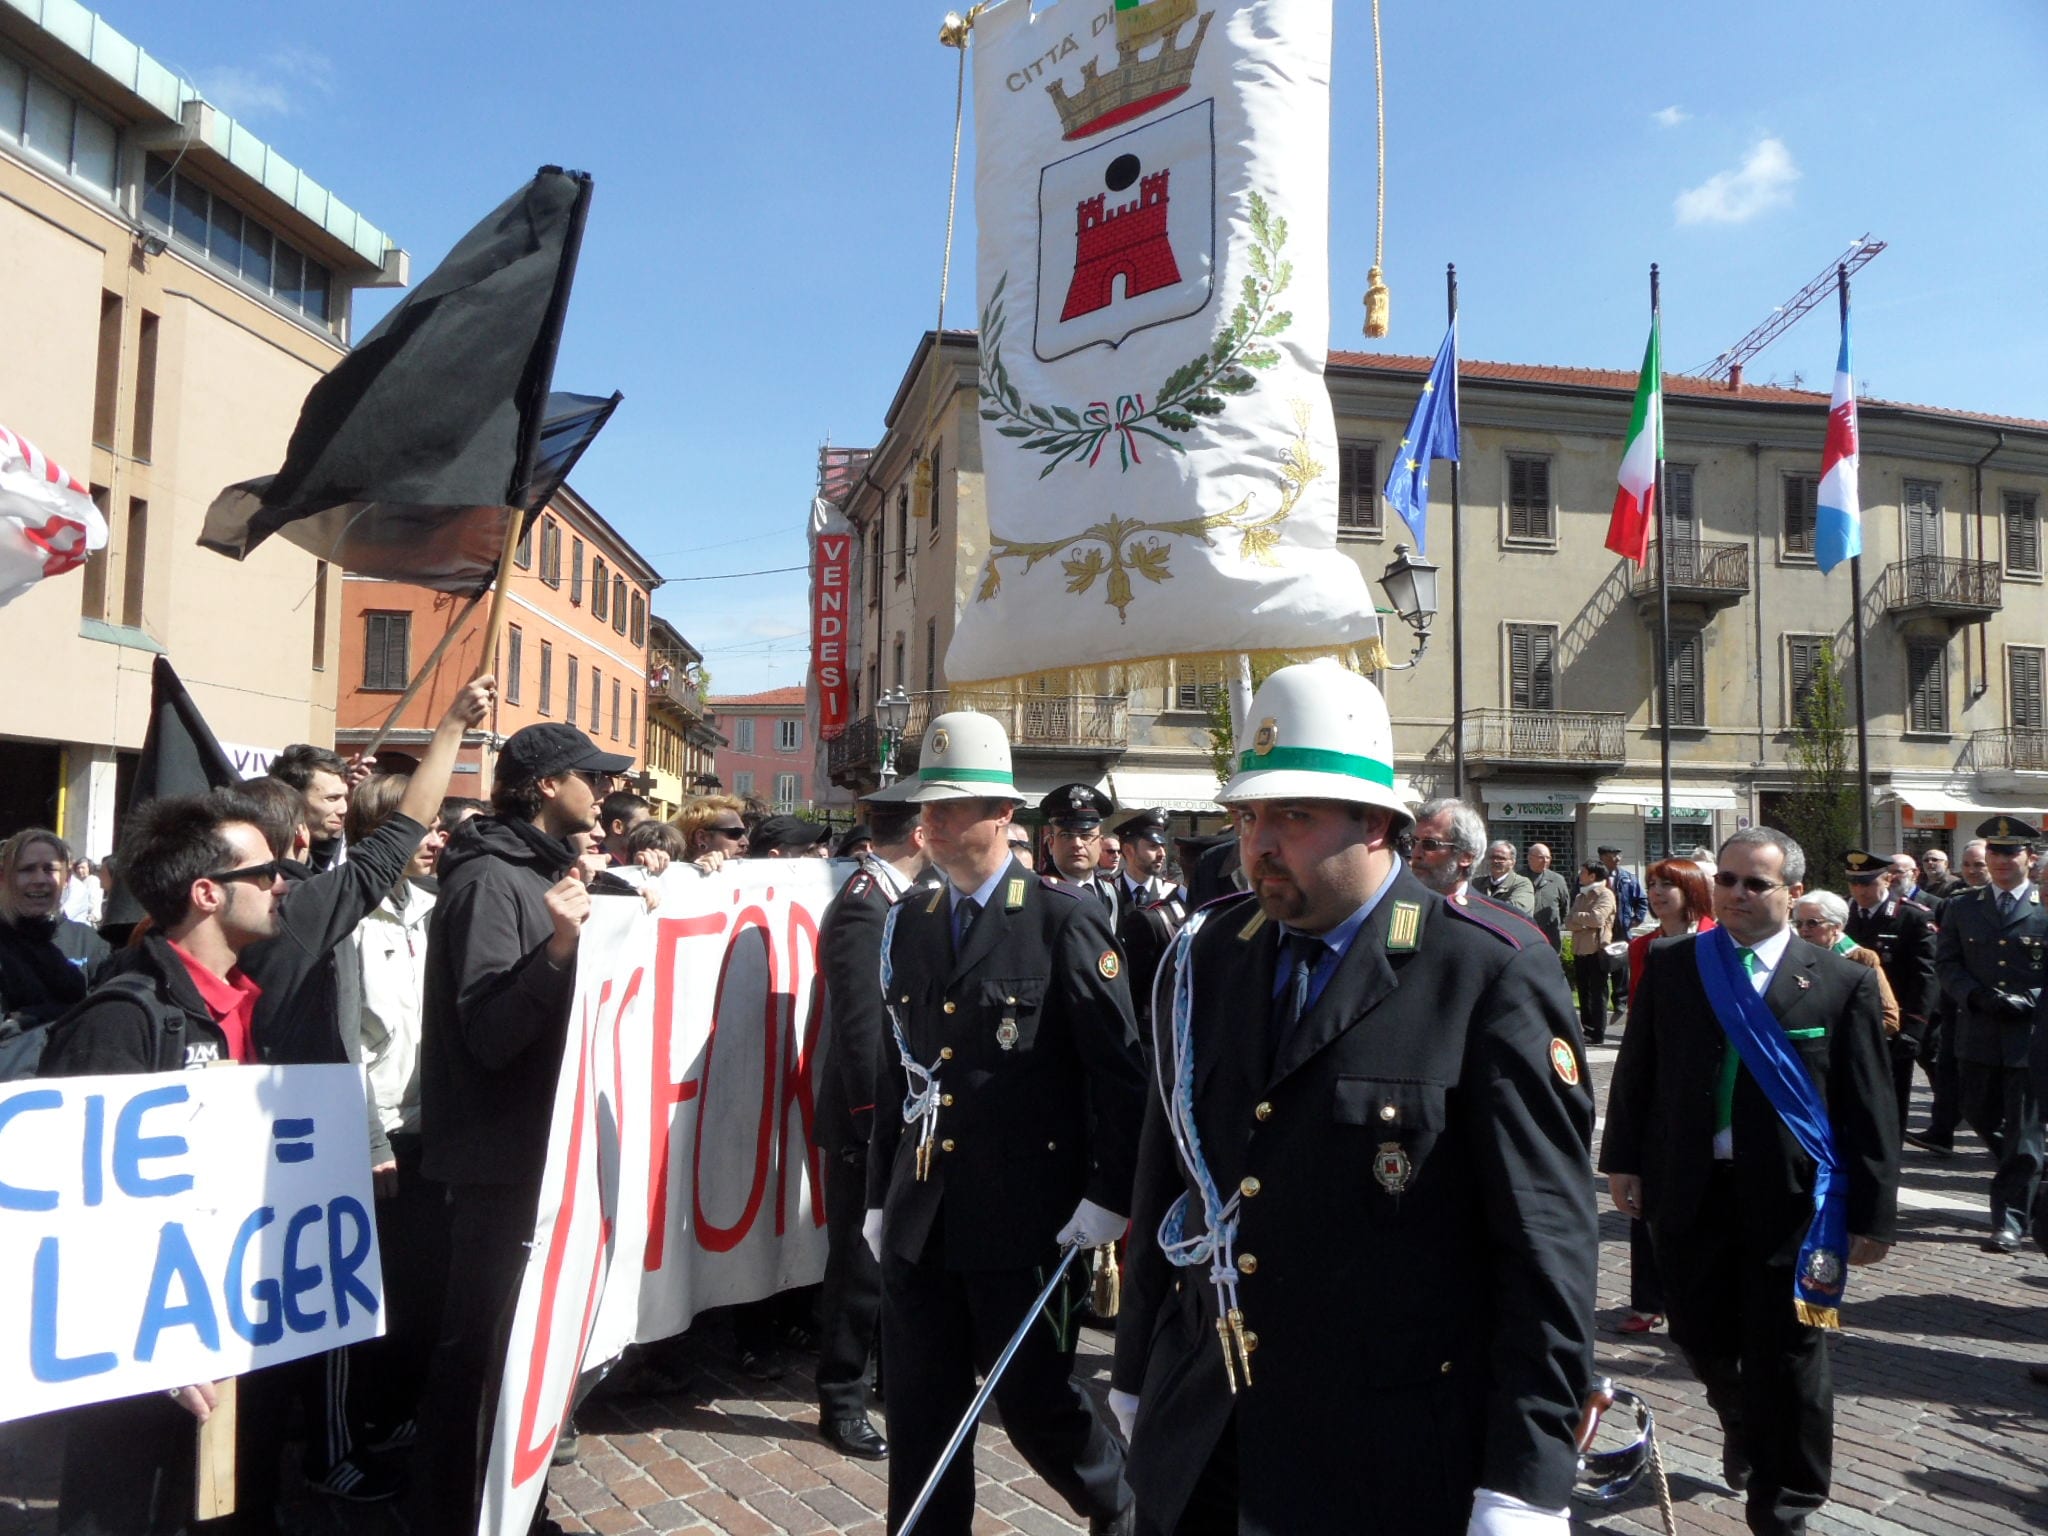 25 Aprile, Telos in piazza “contro l’ipocrisia di chi taglia l’acqua e sfratta”